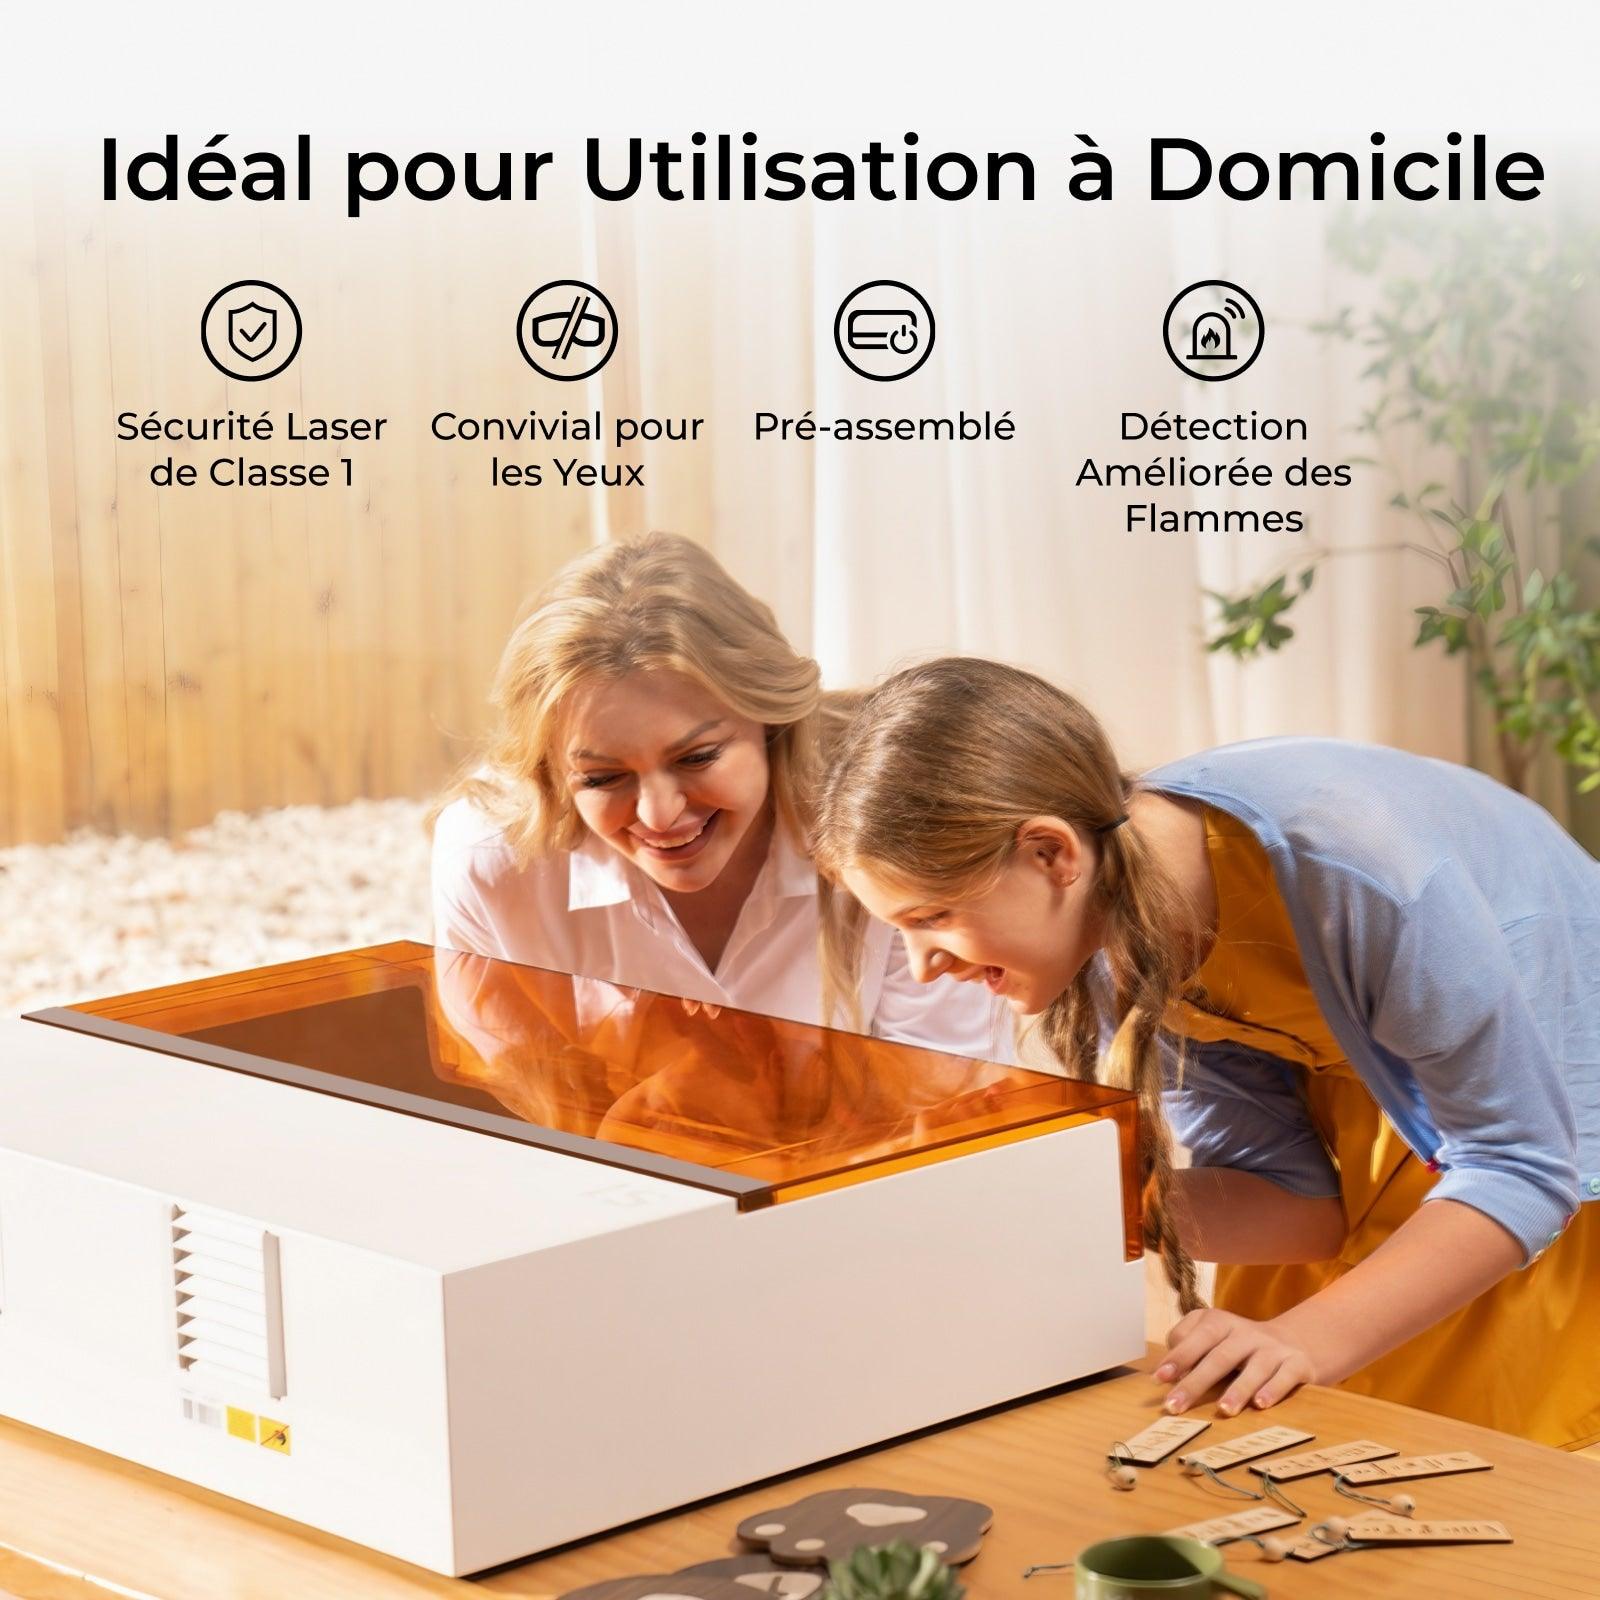 xTool S1 10W Découpeur Laser à Diode Fermé - xTool France Store